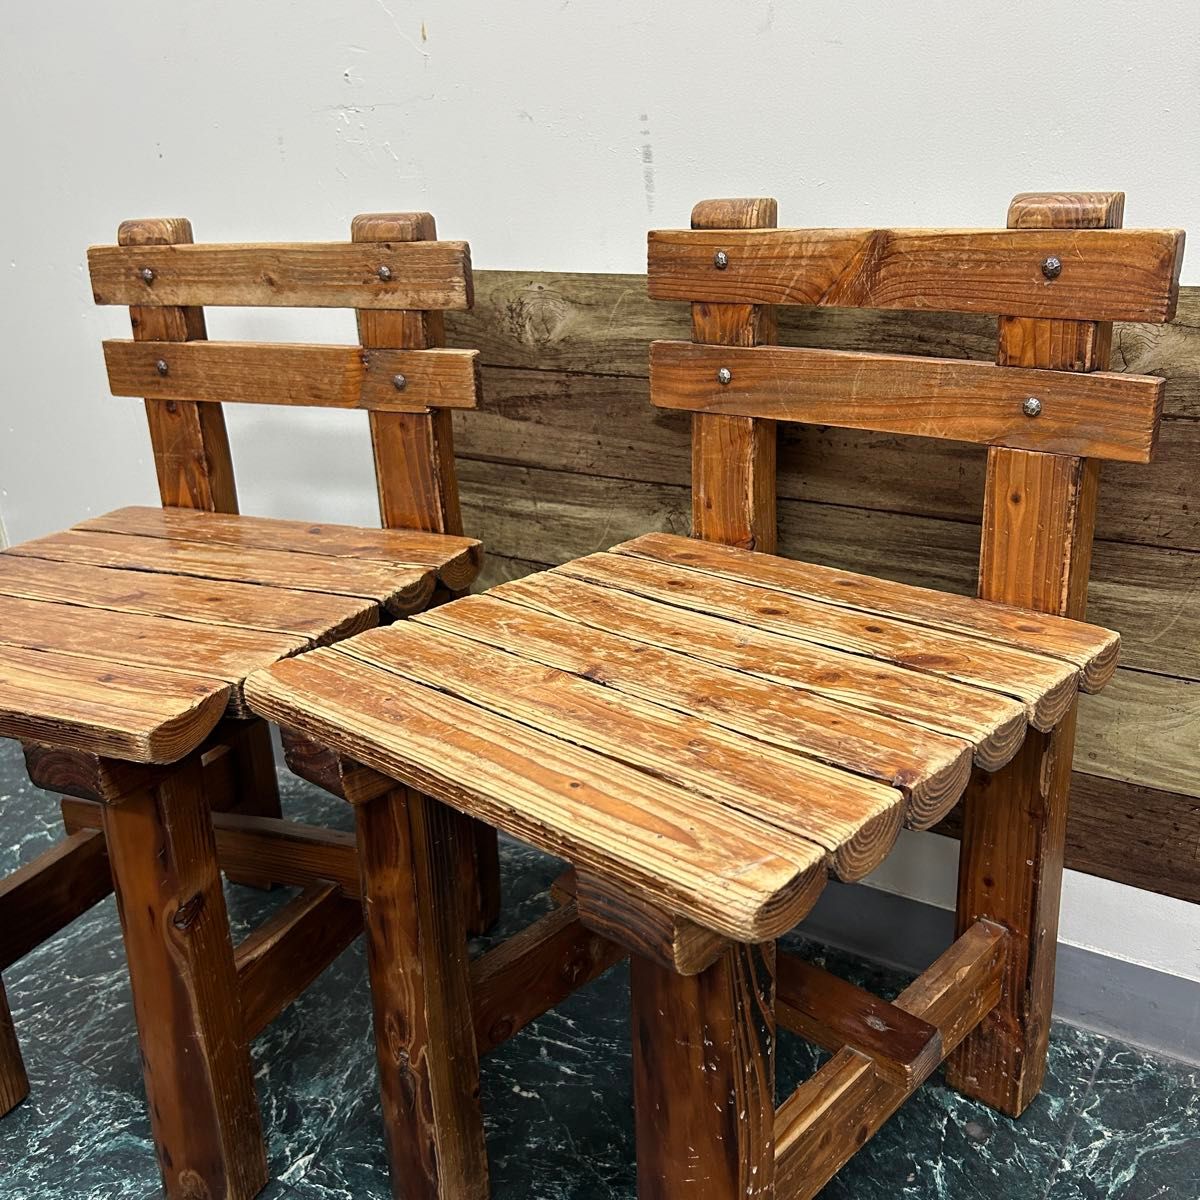 セール 貴重品 天然木材 カラマツ 二つ割 木組み工法  木製椅子 2脚セット  チェア 木製 椅子  家具